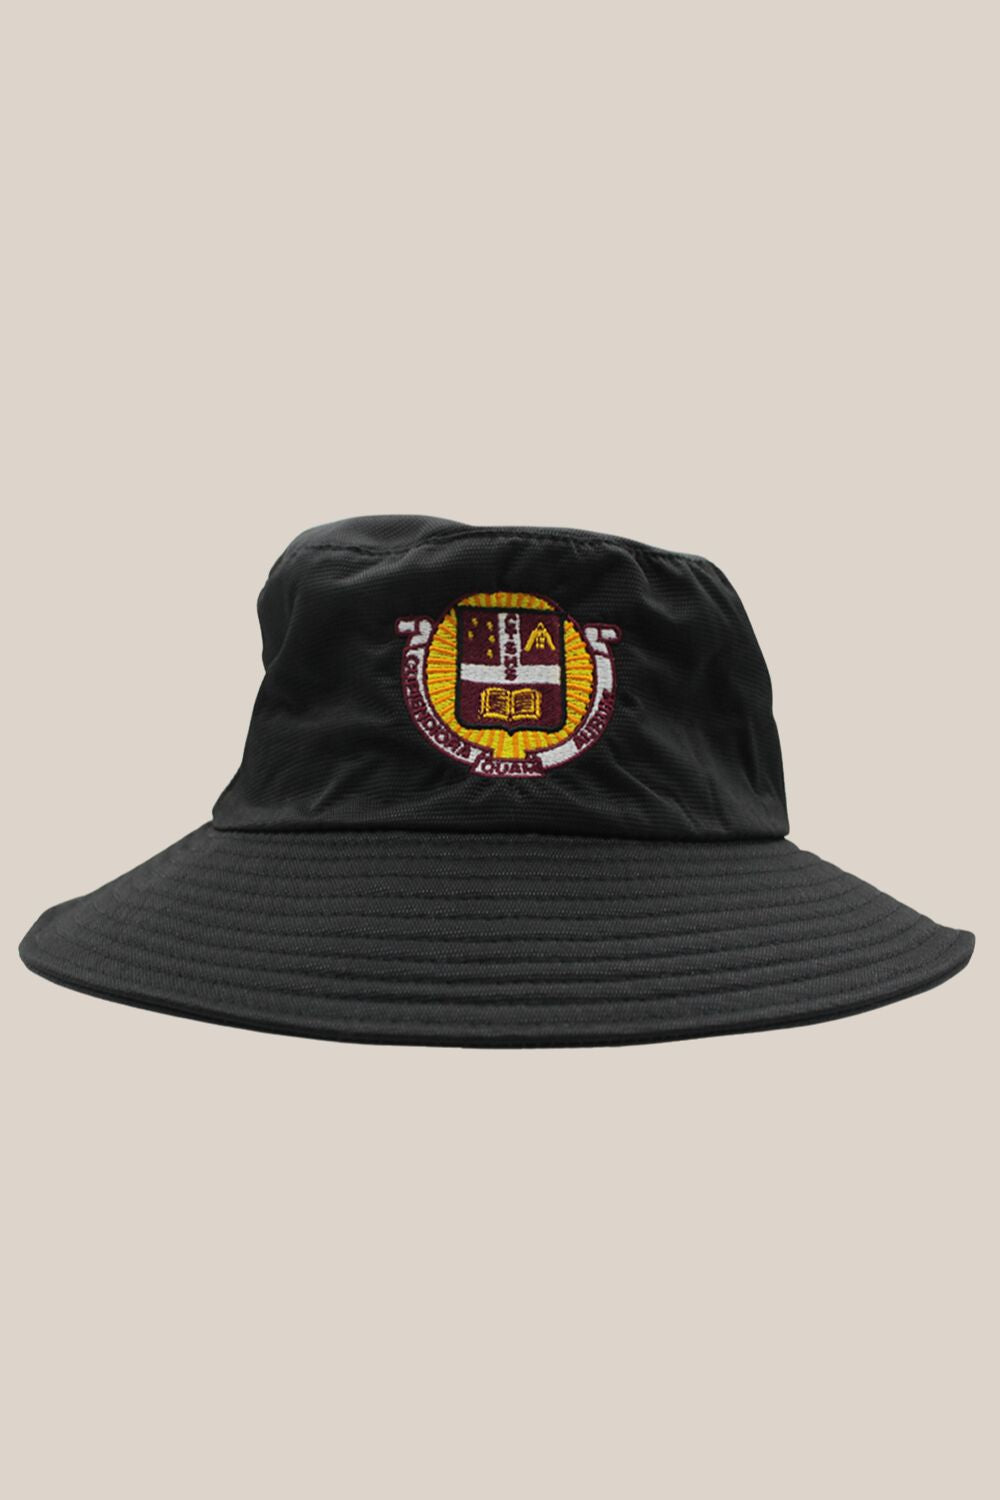 CTSHS Bucket Hat